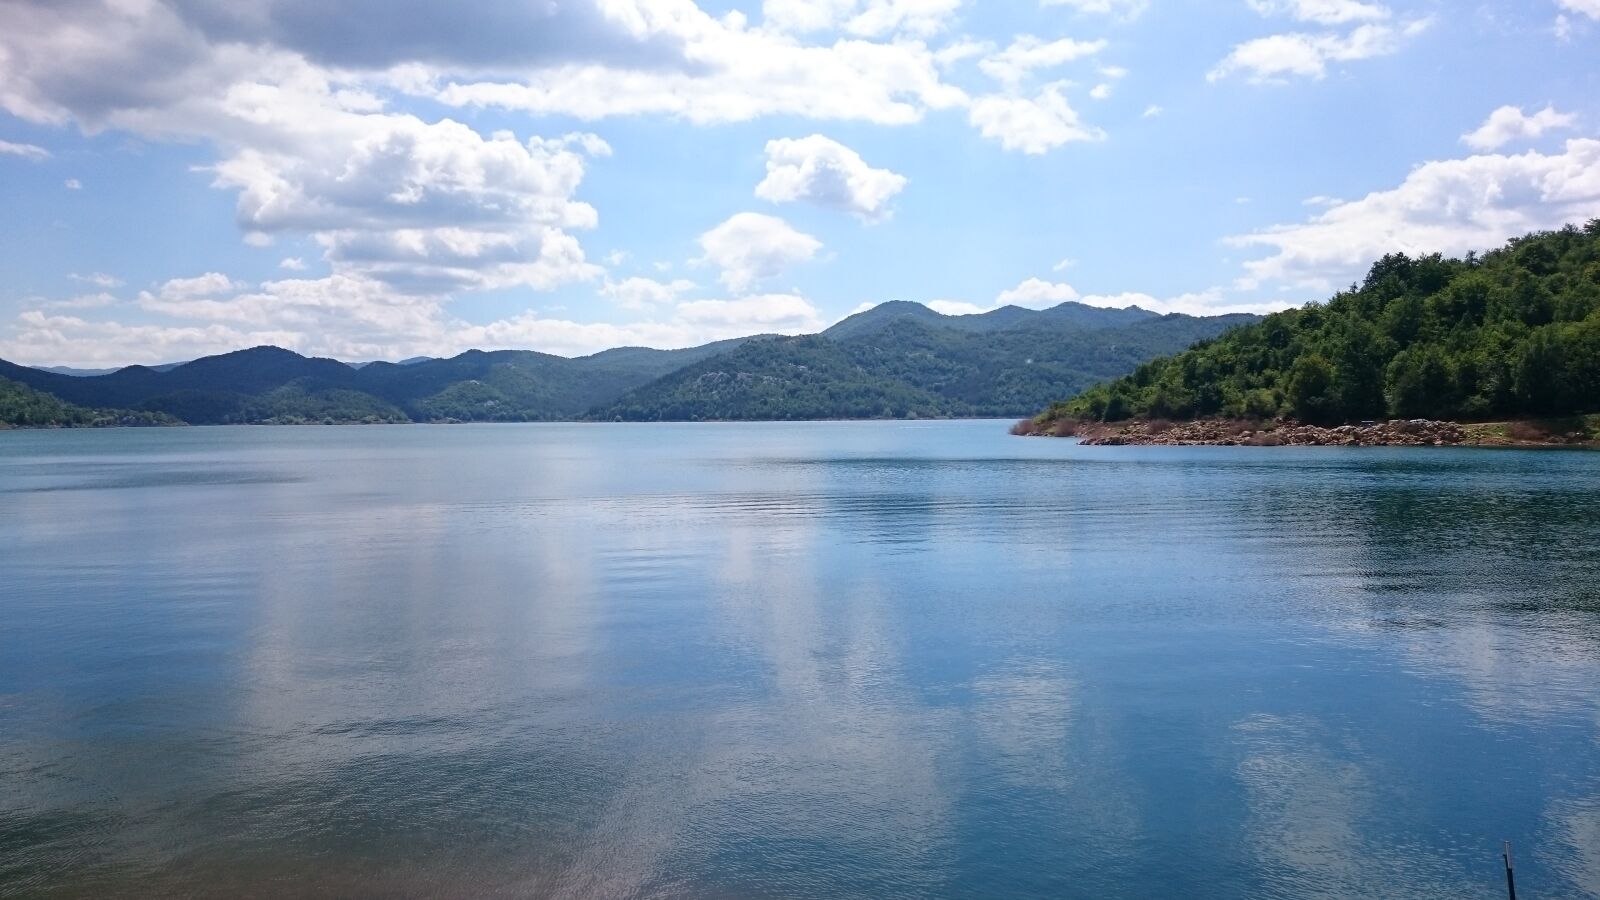 Sony Xperia Z3 sample photo. Croatia, lake photography